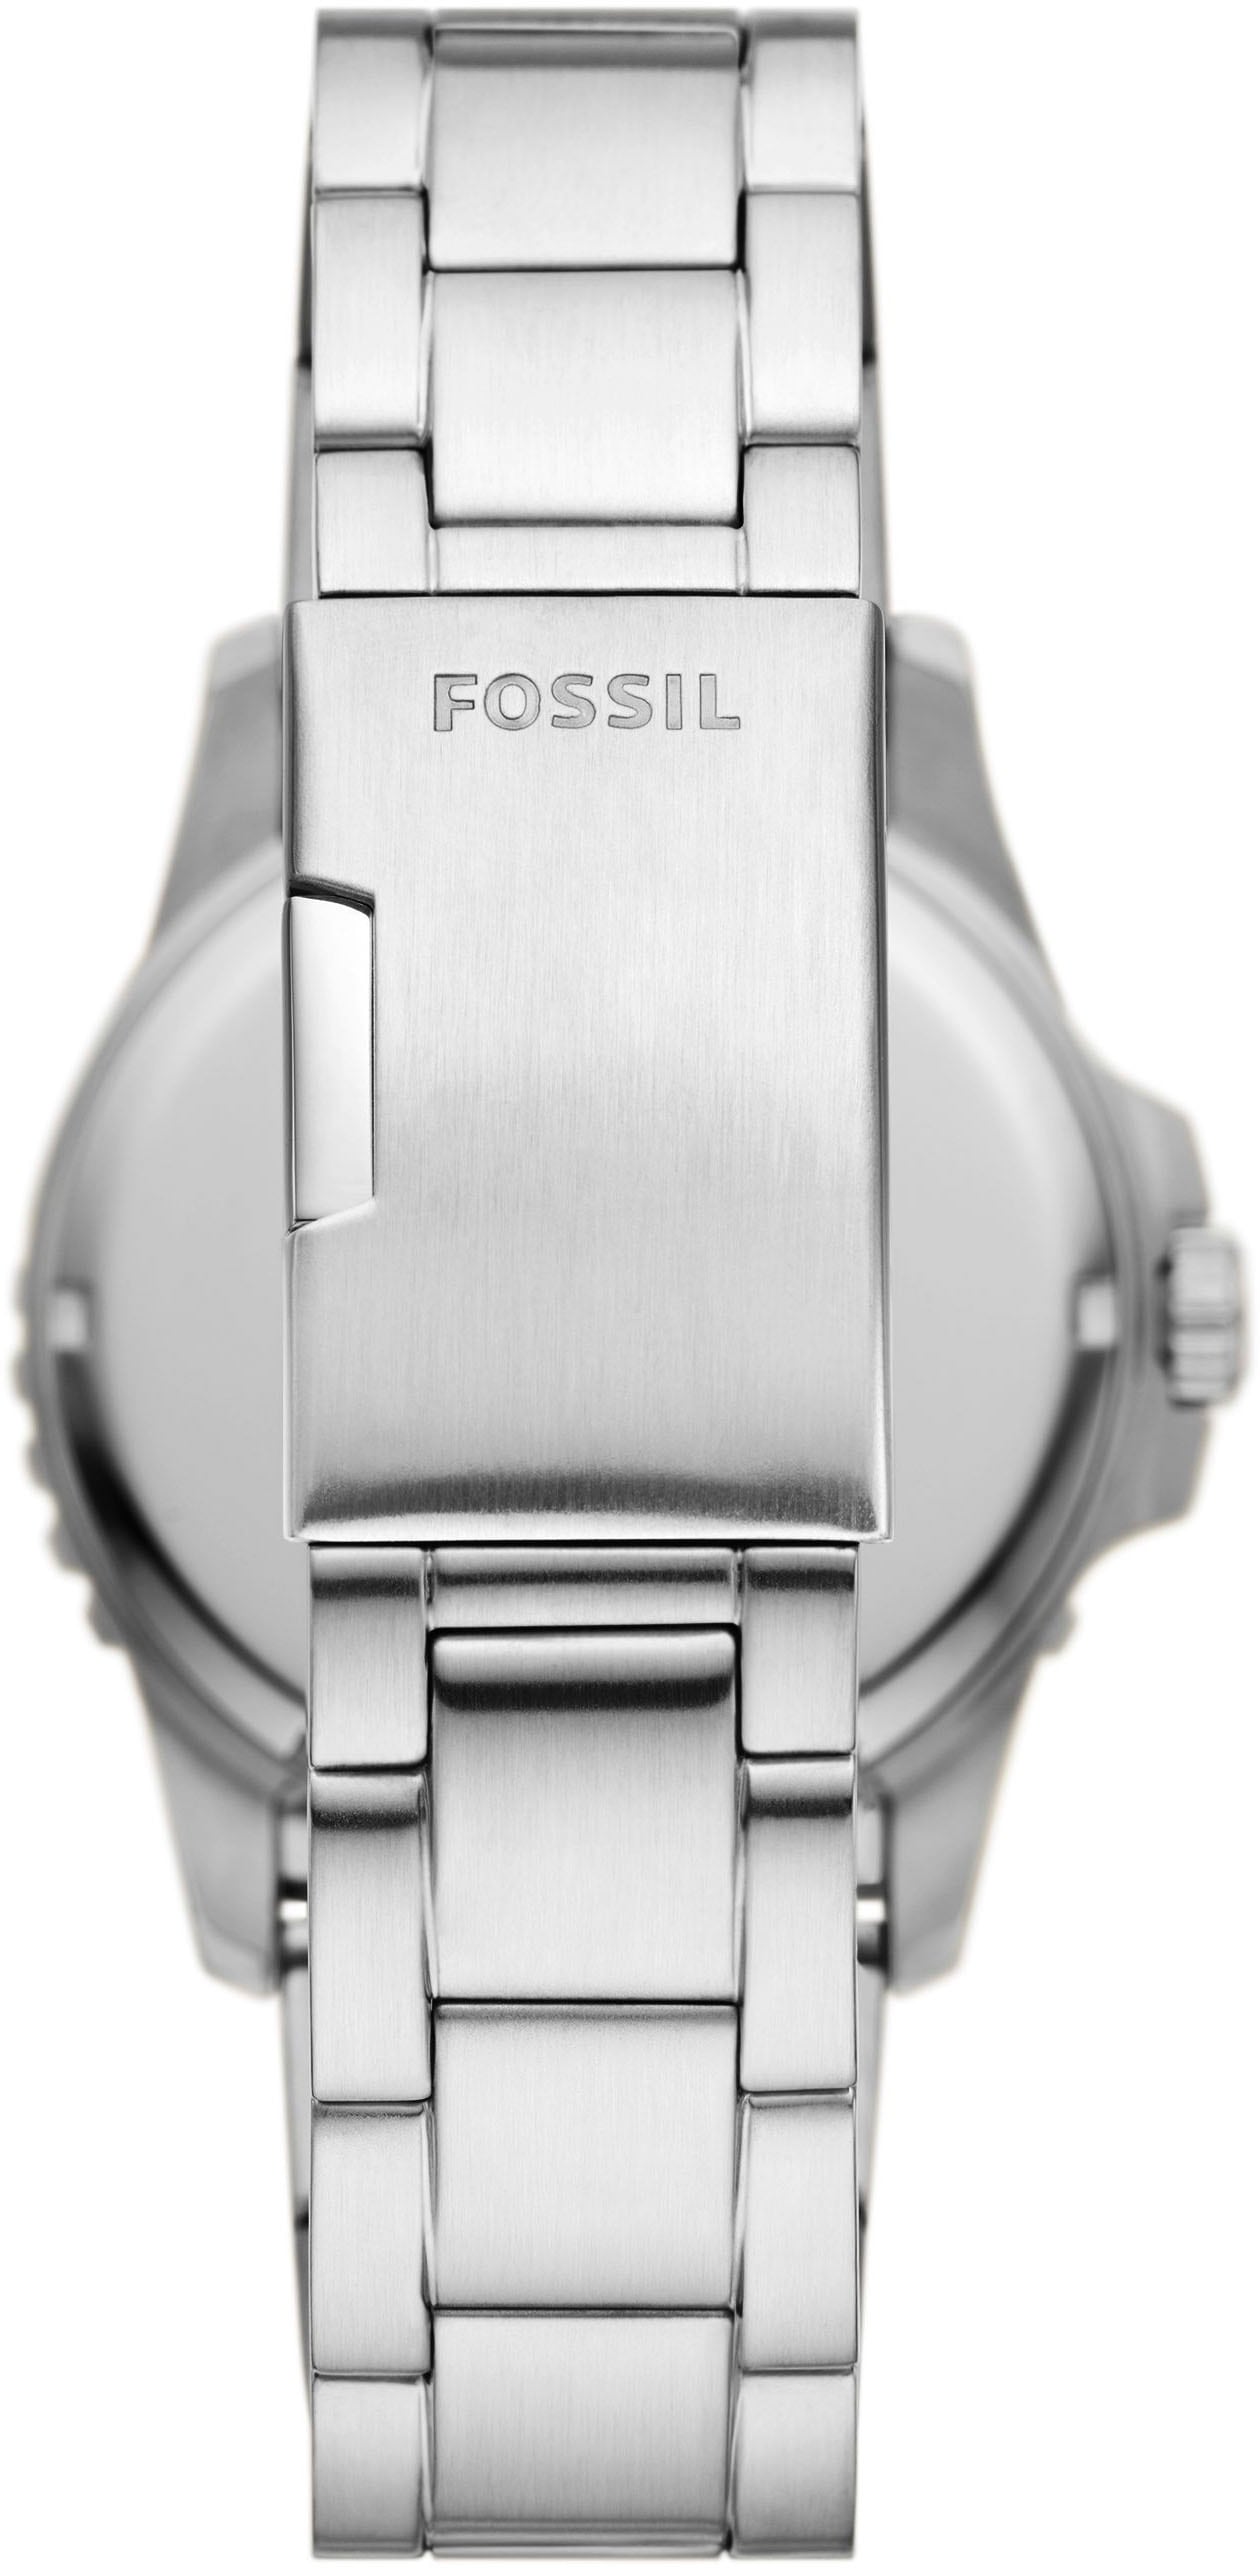 Fossil Quarzuhr »FOSSIL BLUE DIVE, FS6033«, Armbanduhr, Herrenuhr, Datum, analog